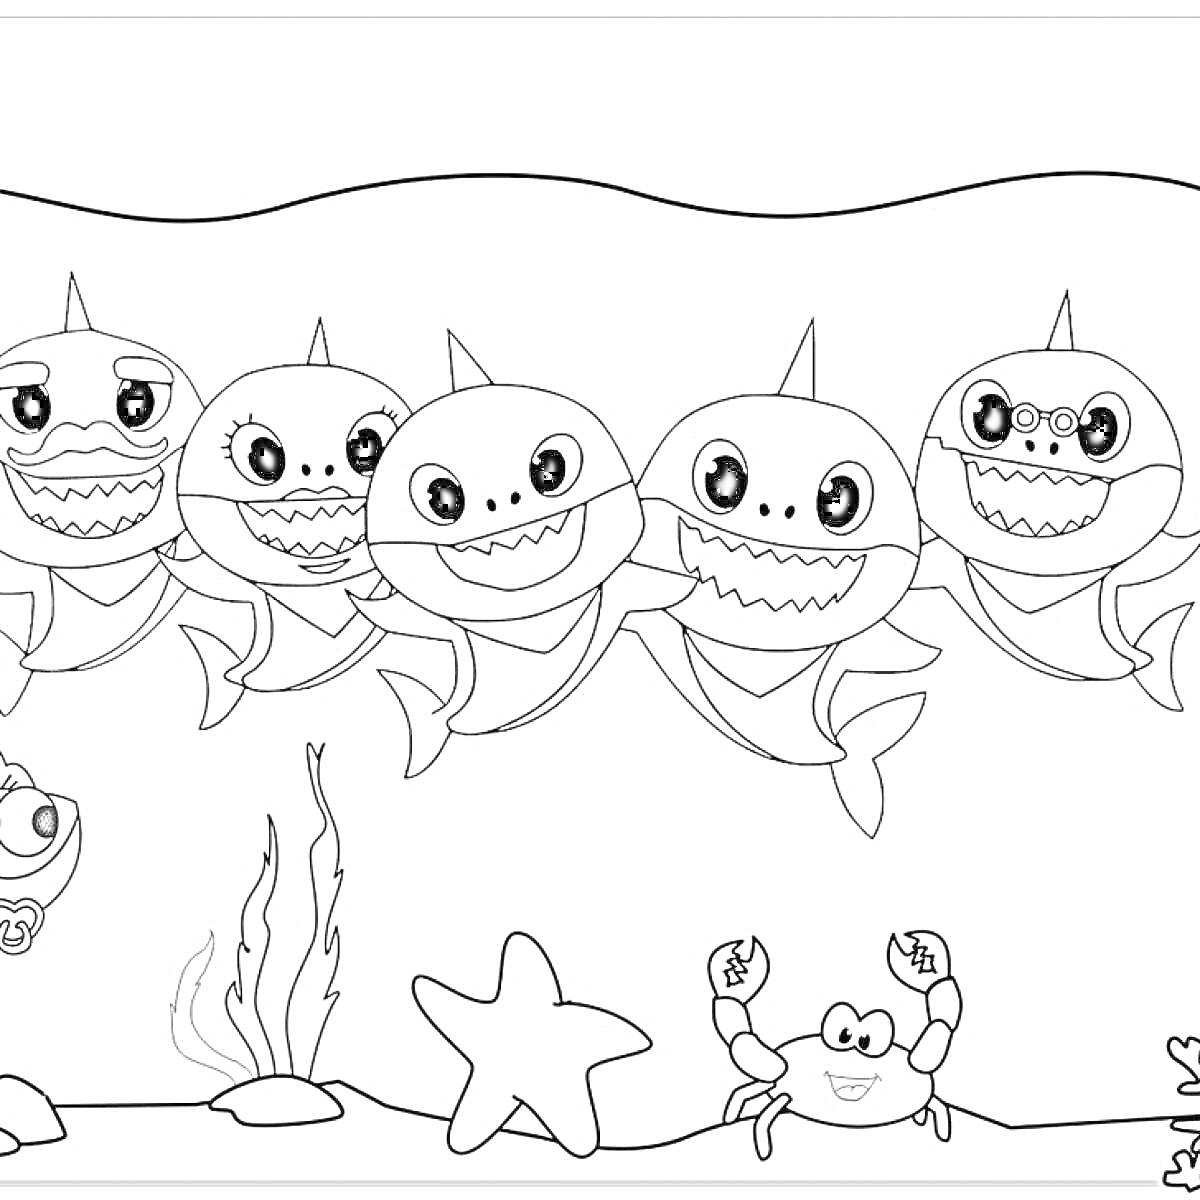 Семья акул в подводном мире с рыбкой, крабом, морской звездой и водорослями